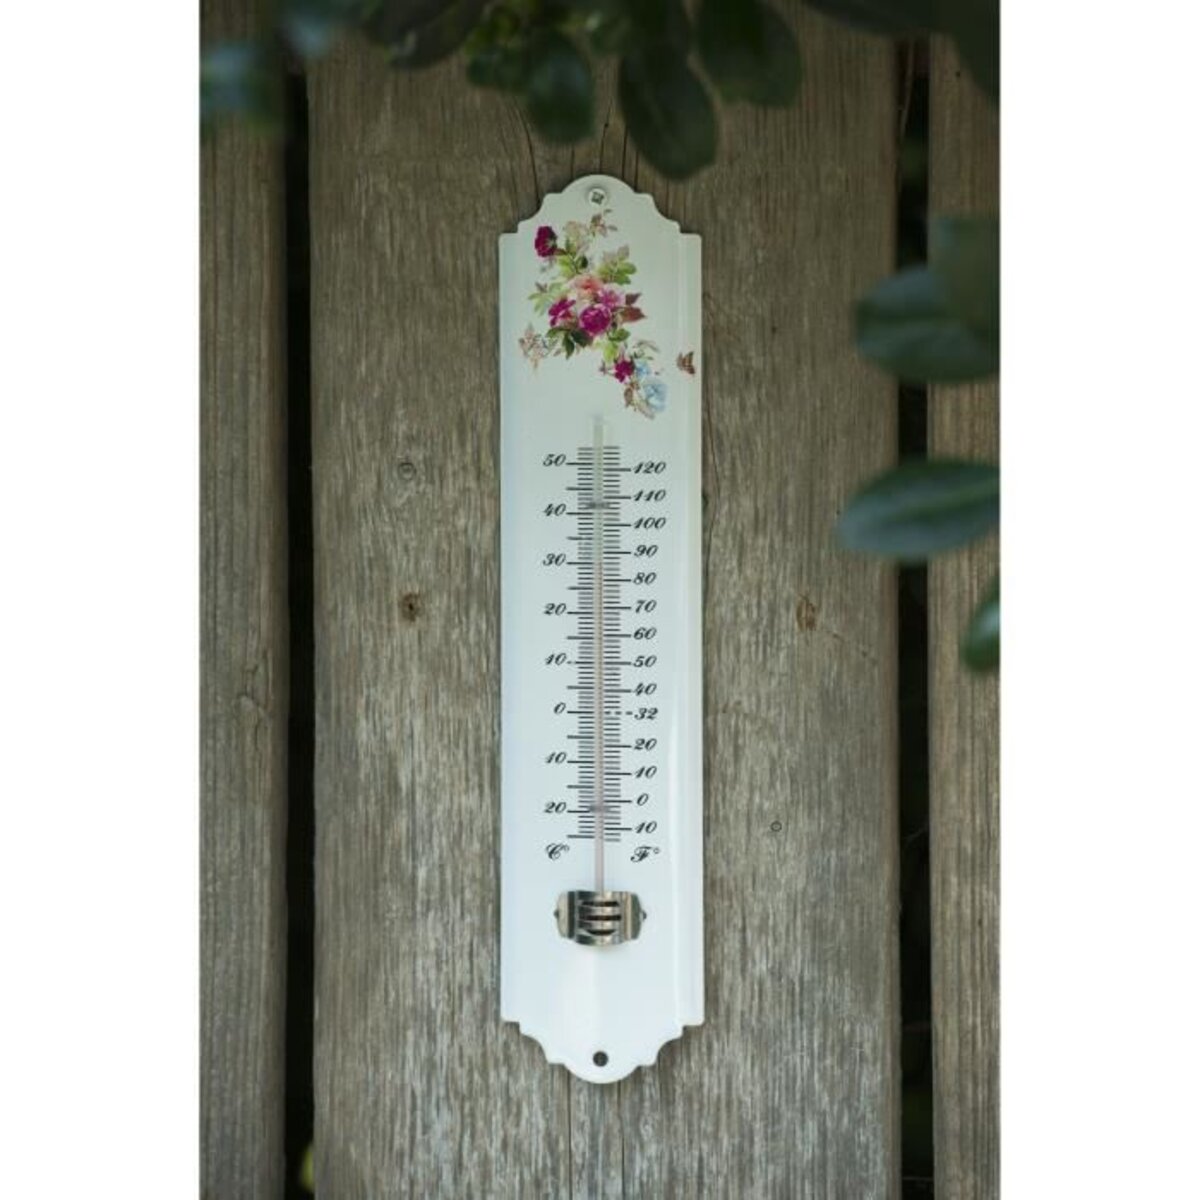 Thermometre extérier déco. fleurs Ht 30 cm en métal epoxy. - Central Jardin